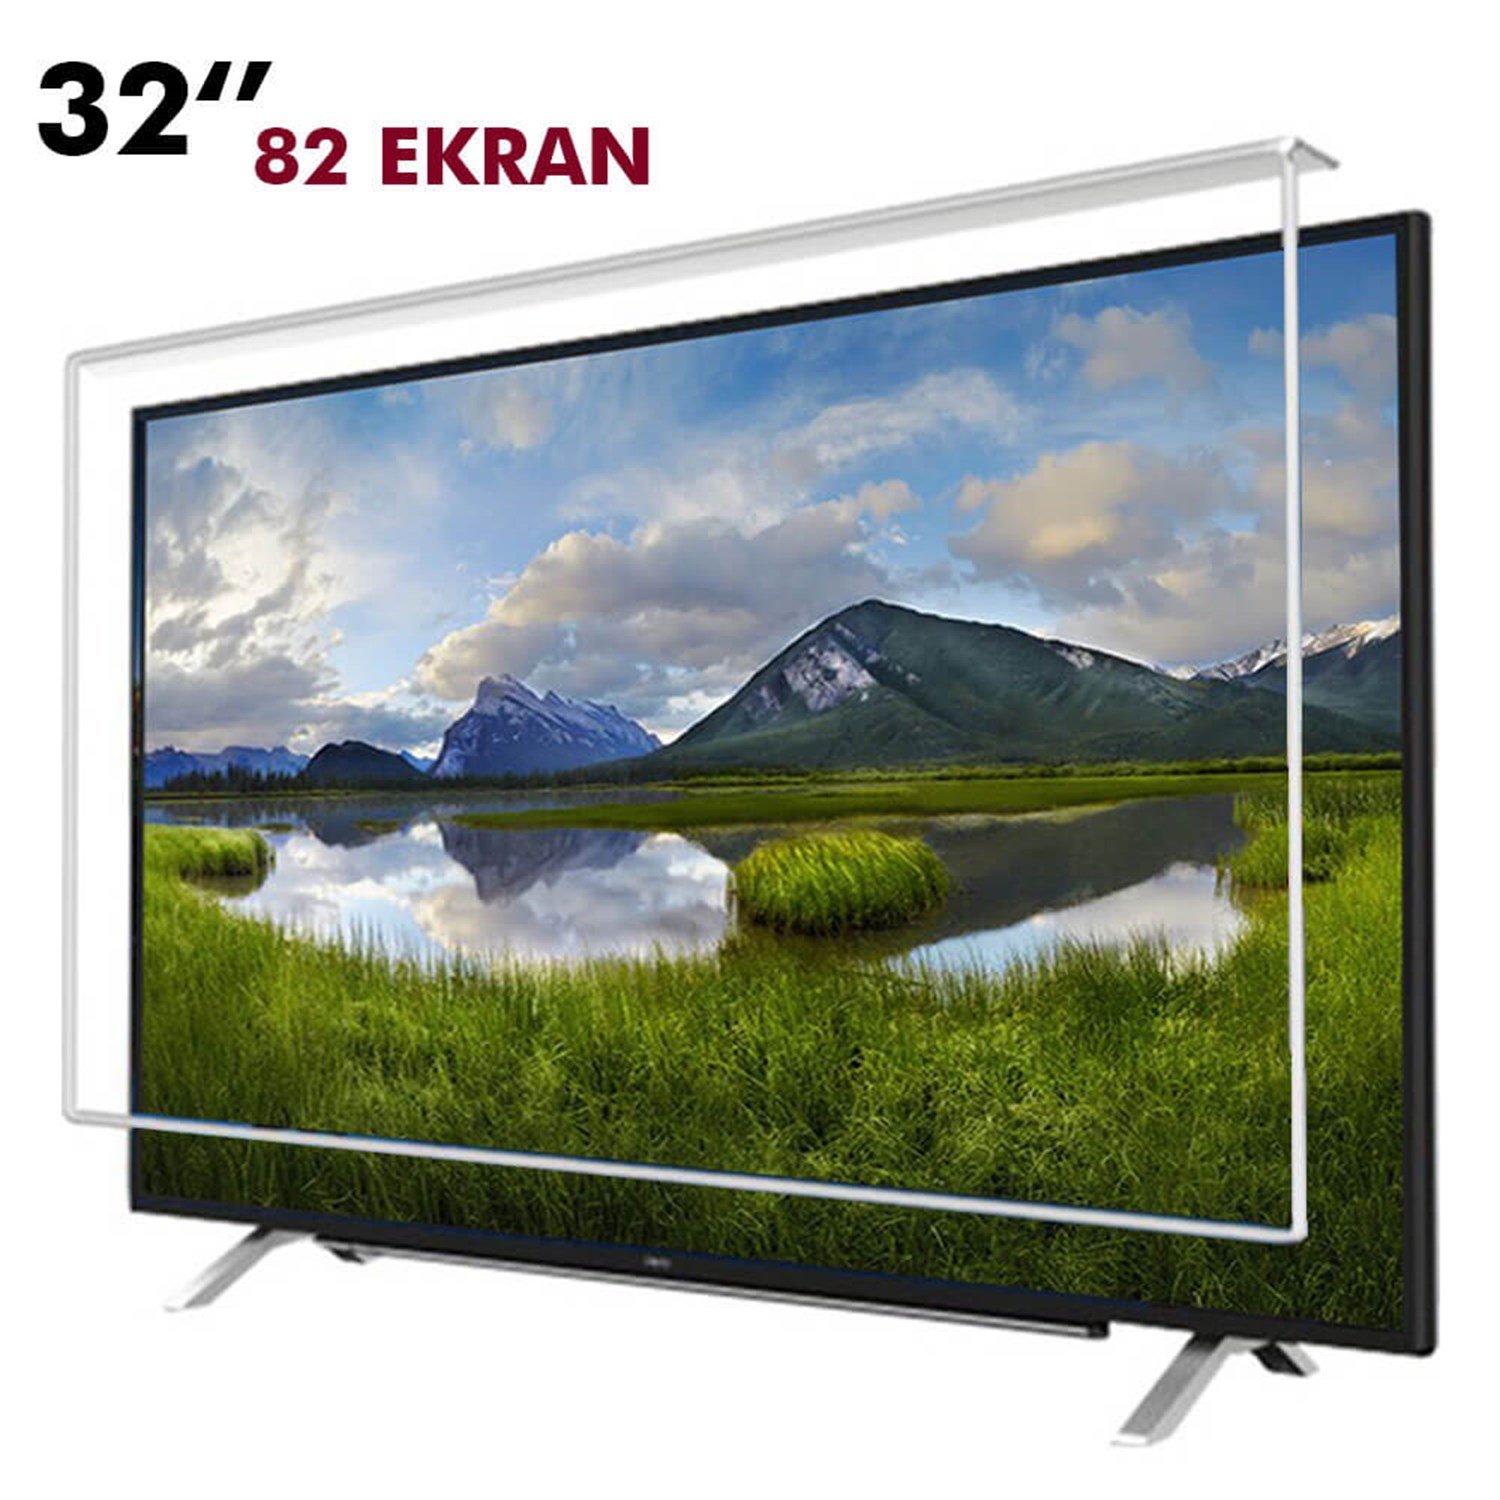 Tv Ekran Koruyucu 82 Ekran(32” inch) | Okularenkkat.com